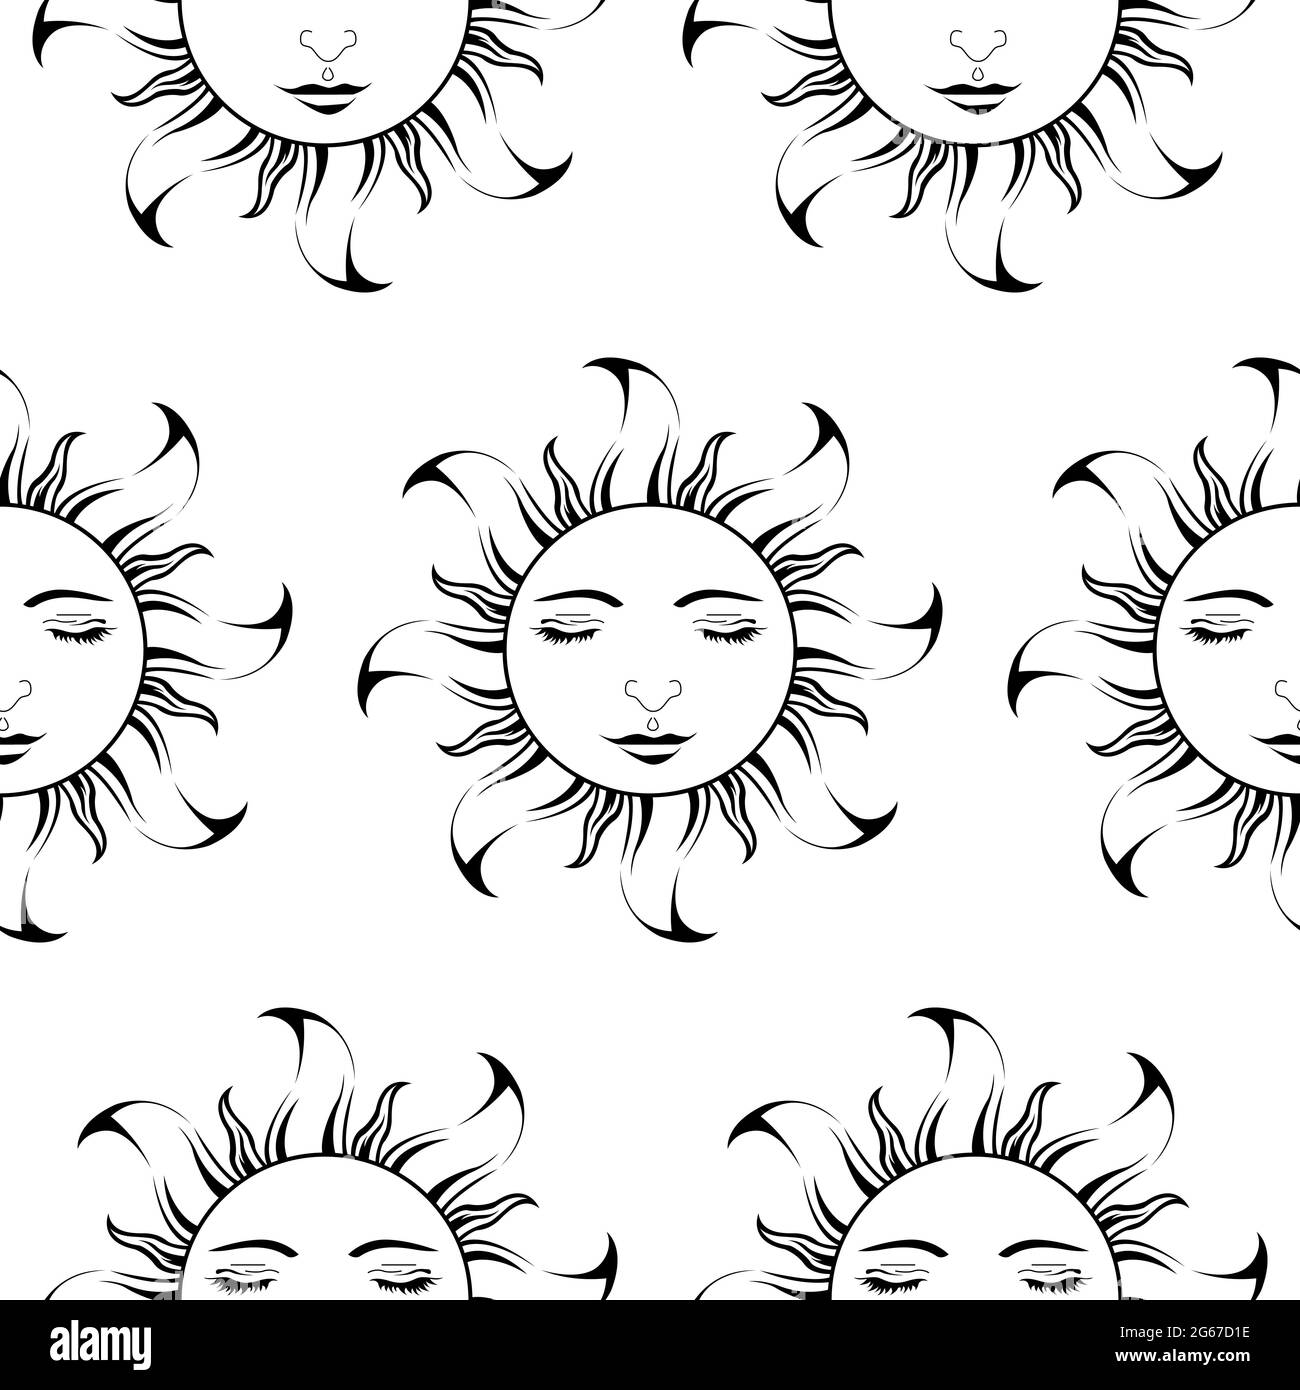 Lord Sun con occhi chiusi - Scroll Saw, Intarsia, T Shirt design, Wall sticker, Tattoo o goffratura arte è in Seamless Pattern Illustrazione Vettoriale